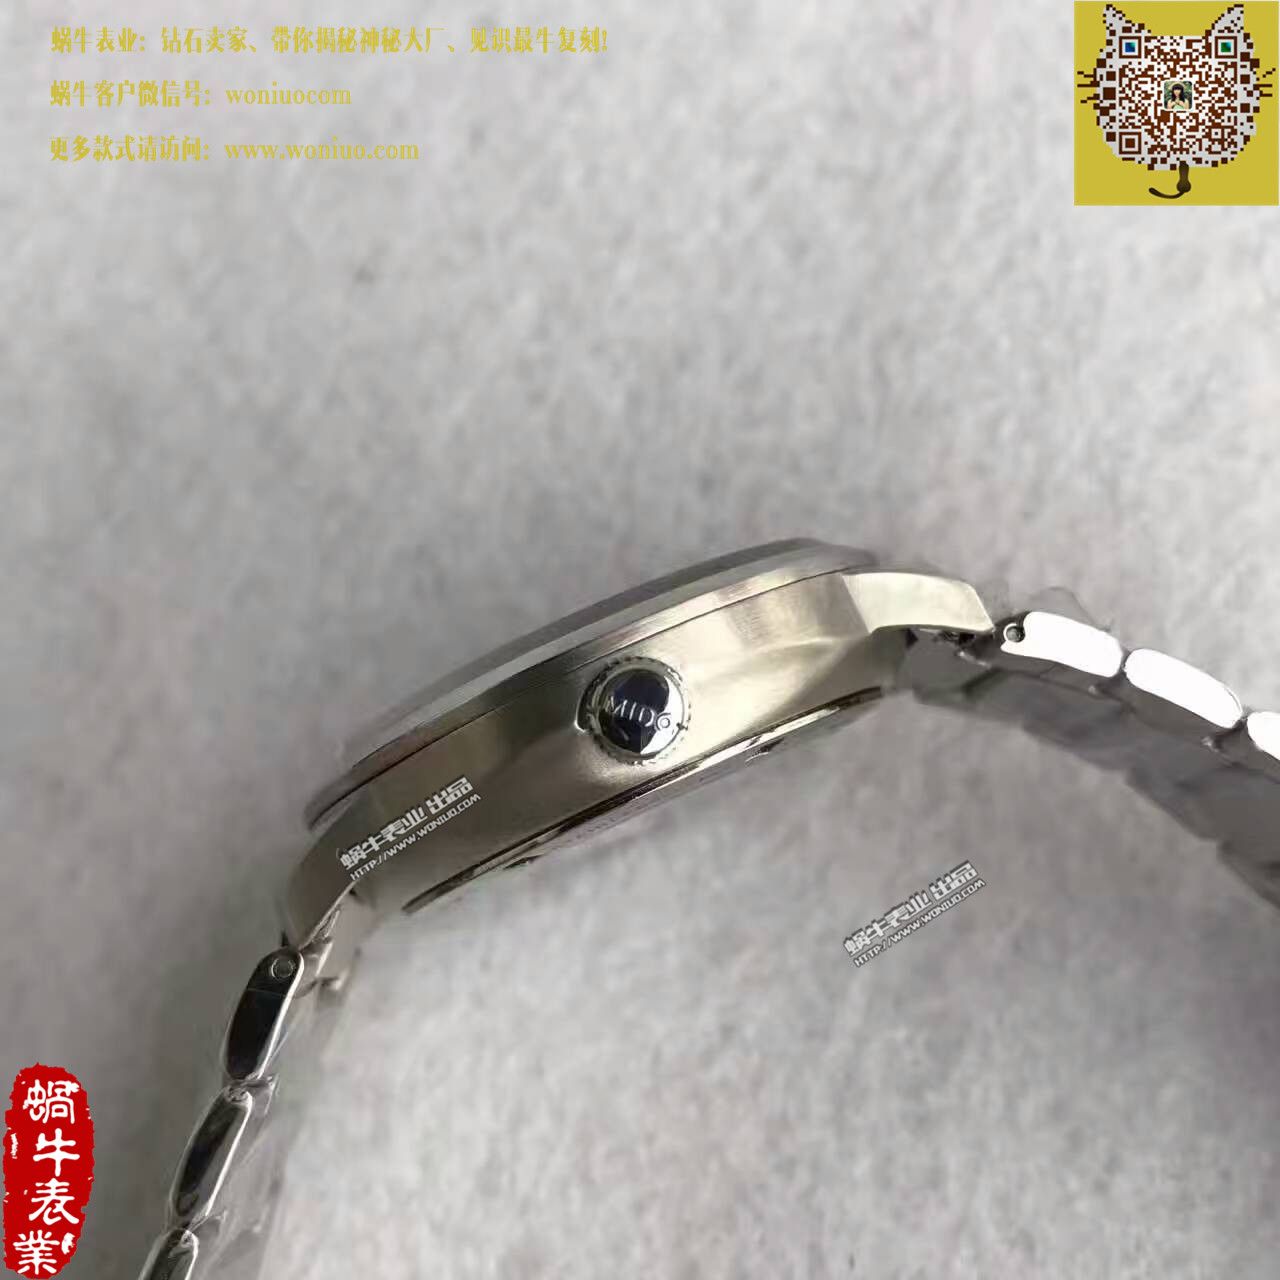 【台湾厂一比一顶级精仿手表】美度指挥官系列M021.431.11.061.00腕表 